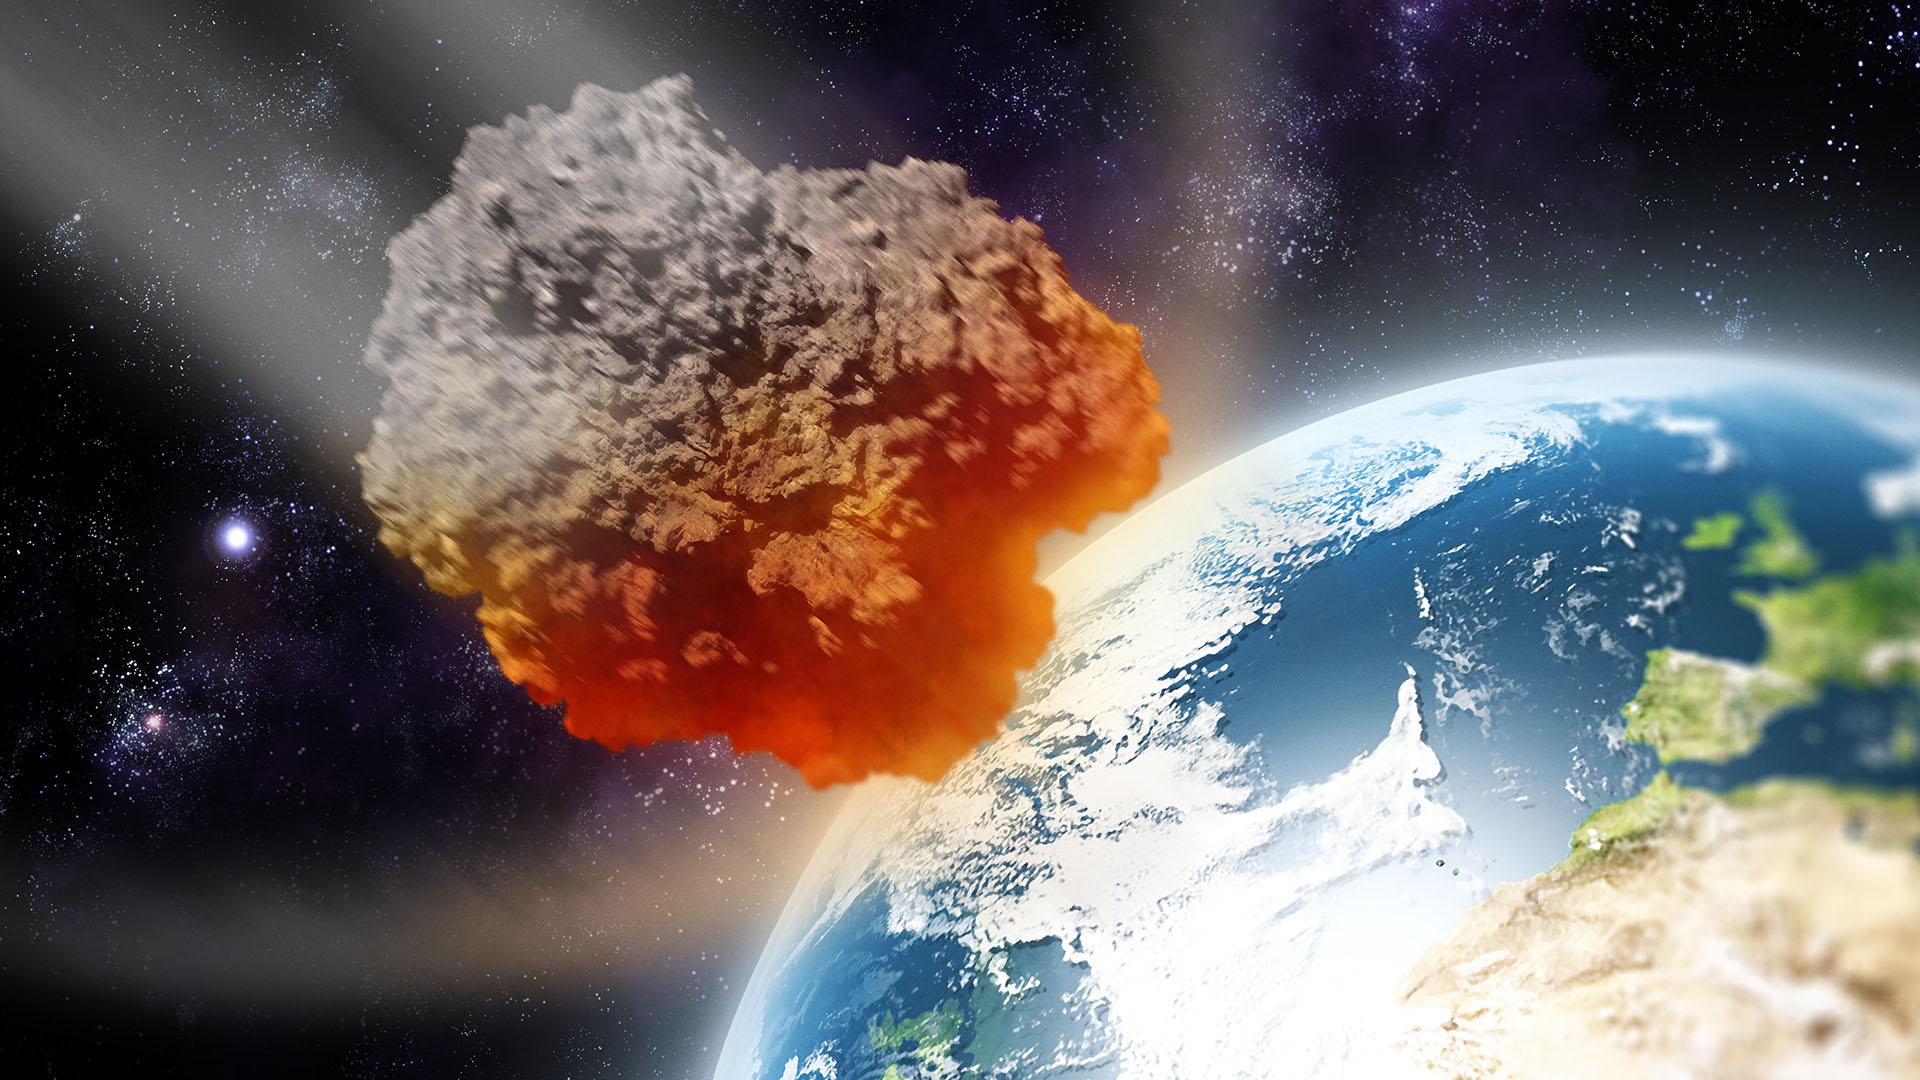 Por qué el nuevo asteroide descubierto podría ser muy peligroso para la Tierra en el futuro